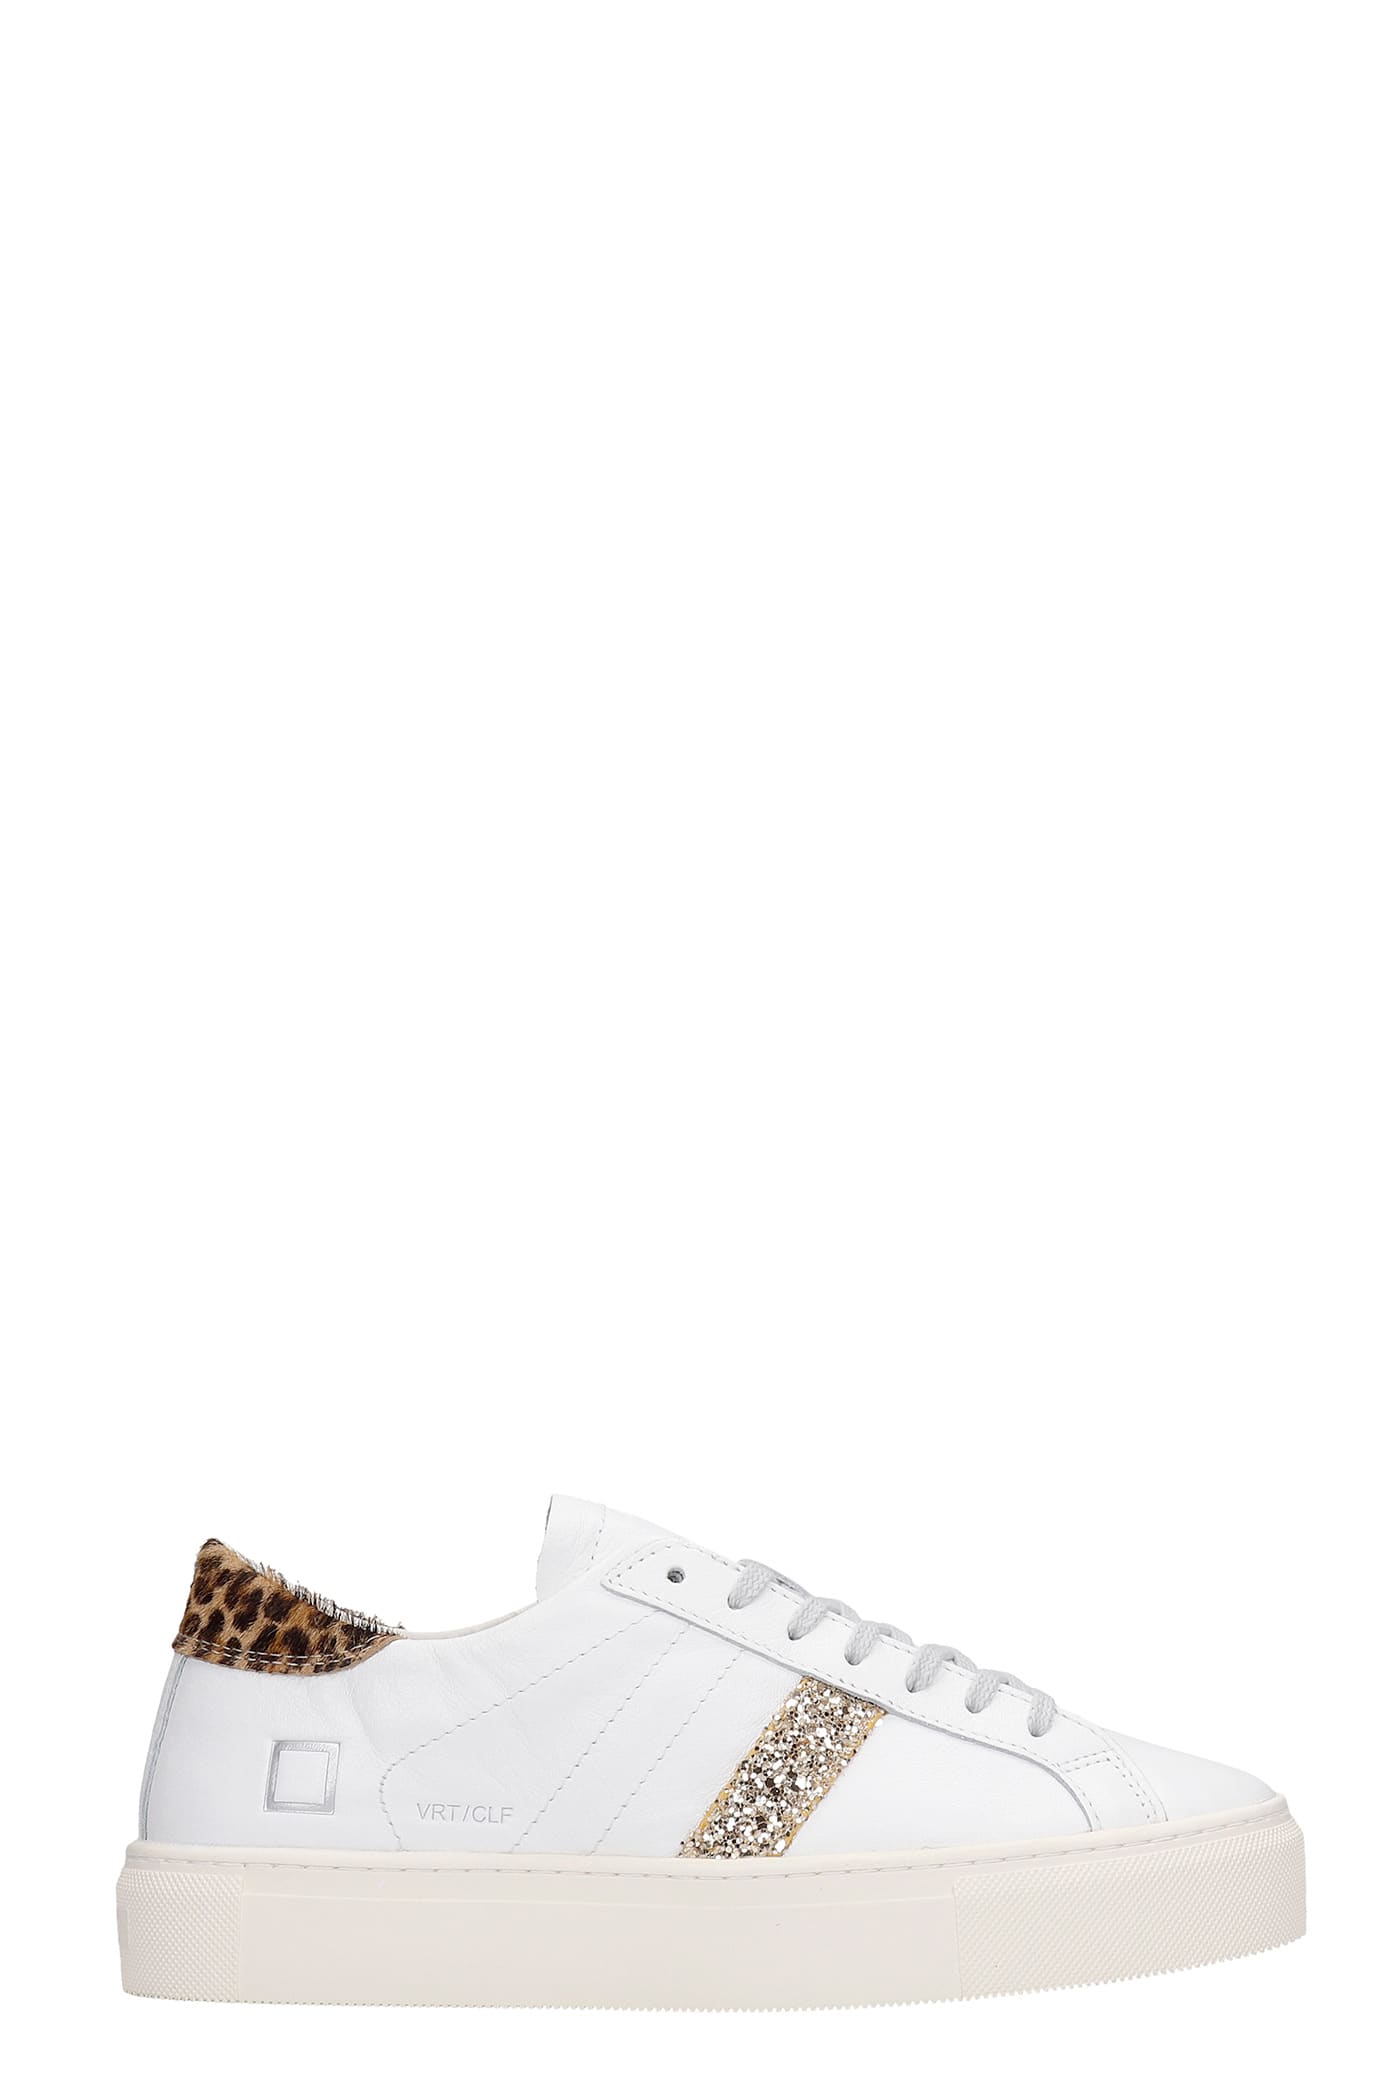 Date Vertigo Sneakers In White Leather